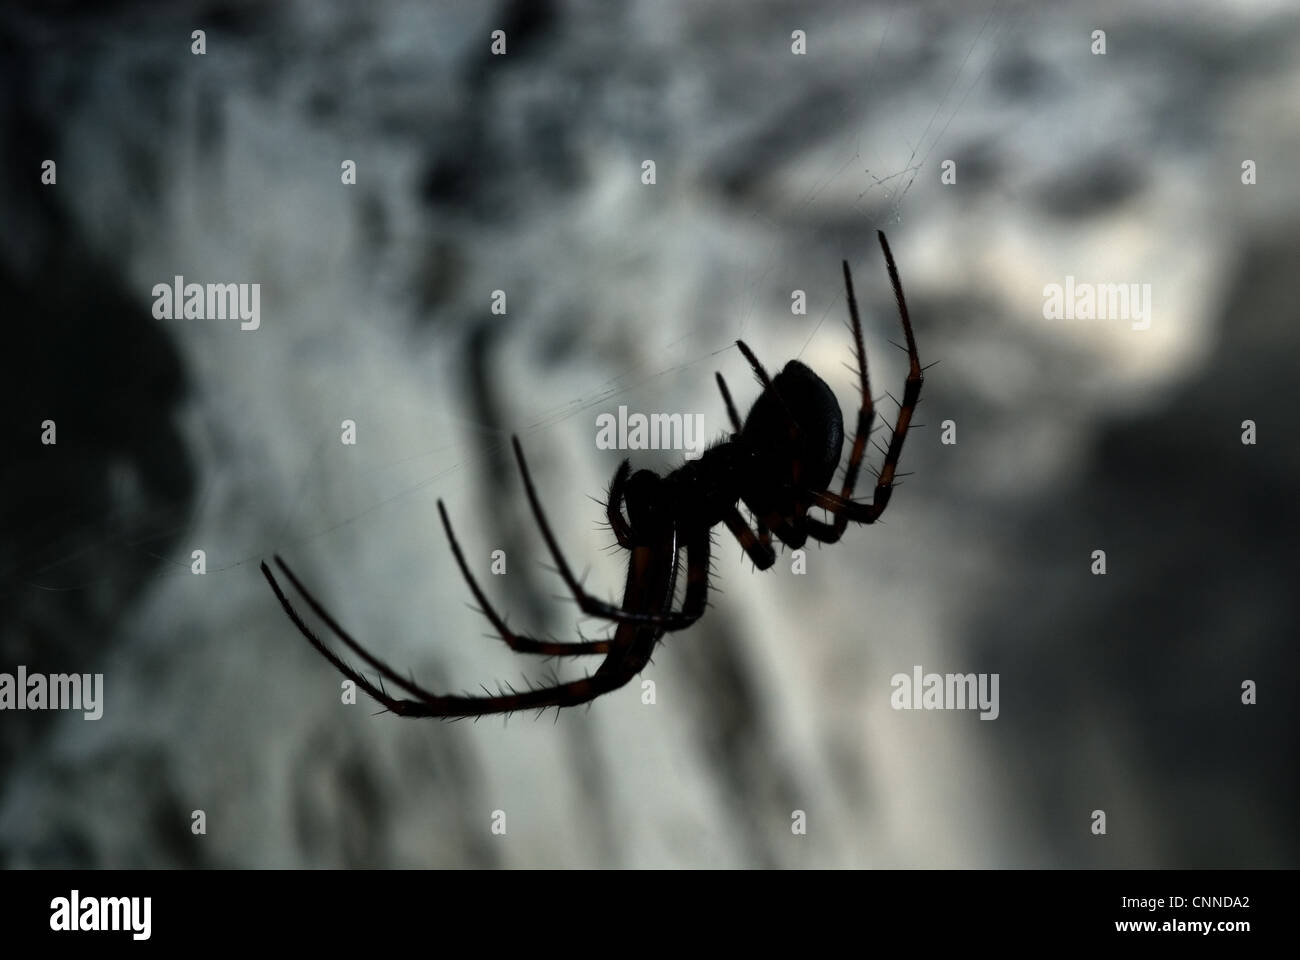 European Cave Spider (Meta menardi) adult female, on web in cave, Italy Stock Photo